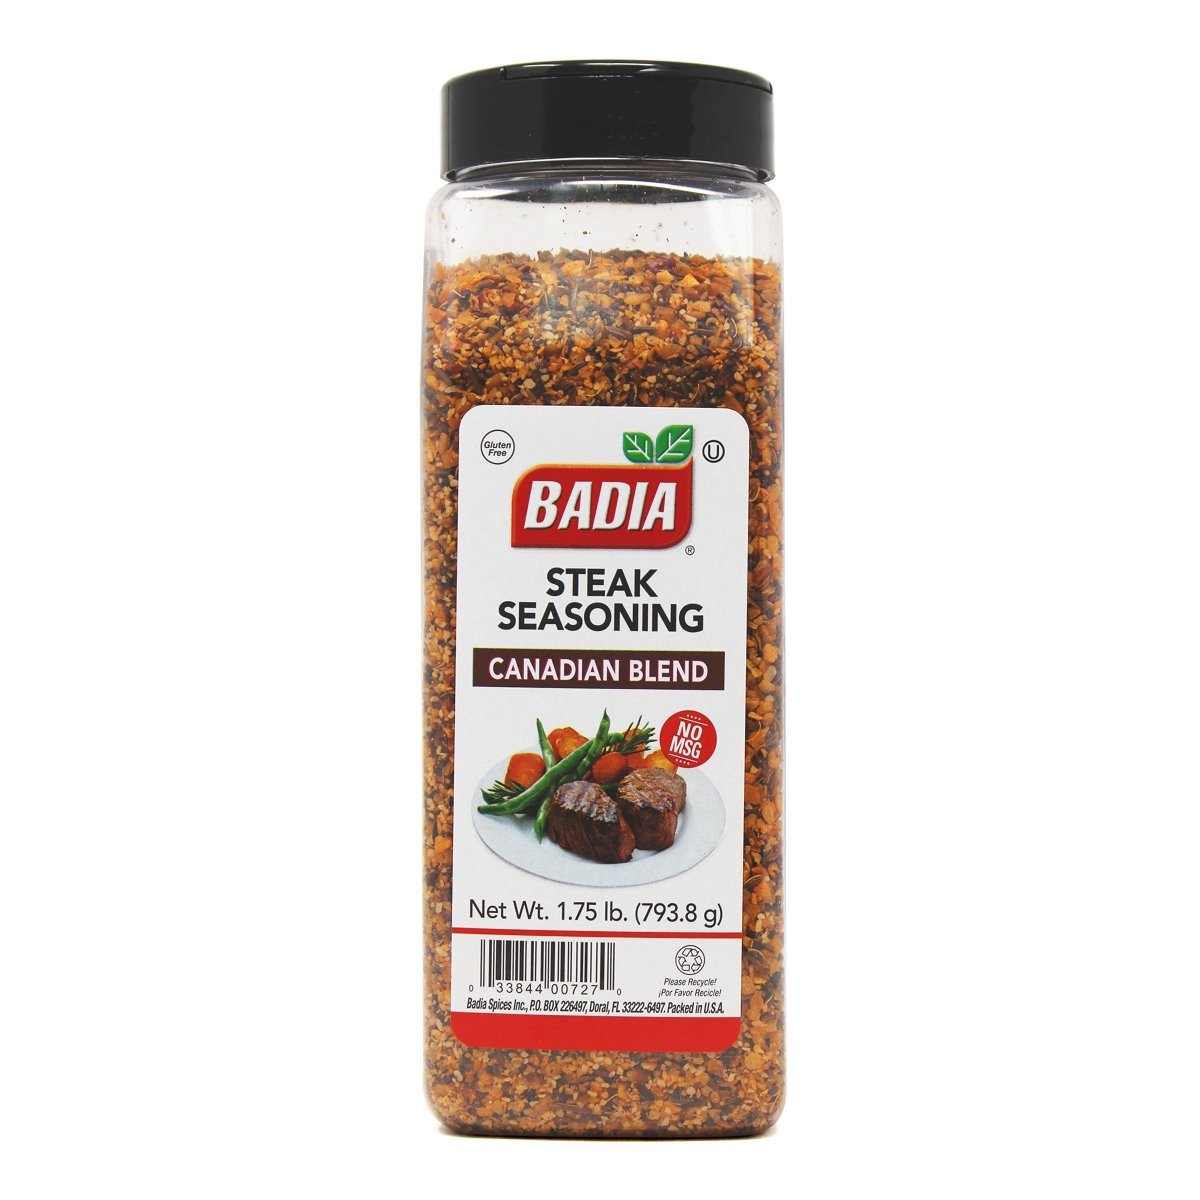 https://texasstargrillshop.com/cdn/shop/products/badia-steak-seasoning-175lb-00727-texas-star-grill-shop-727-204087.jpg?v=1685635428&width=1200